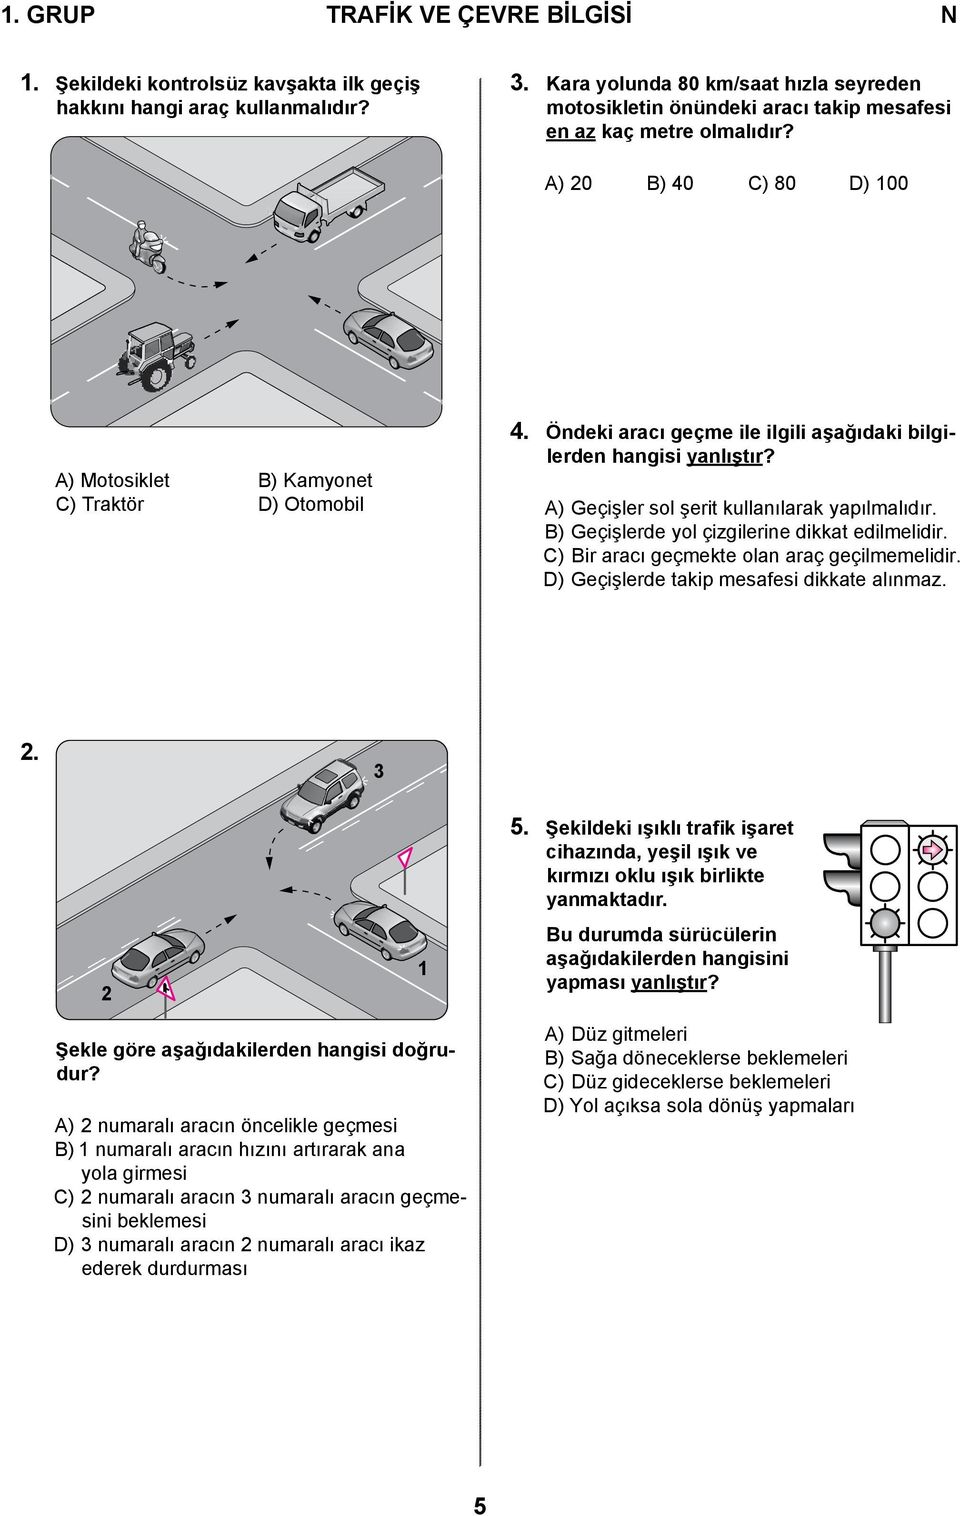 Öndeki aracı geçme ile ilgili aşağıdaki bilgilerden hangisi yanlıştır? A) Geçişler sol şerit kullanılarak yapılmalıdır. B) Geçişlerde yol çizgilerine dikkat edilmelidir.